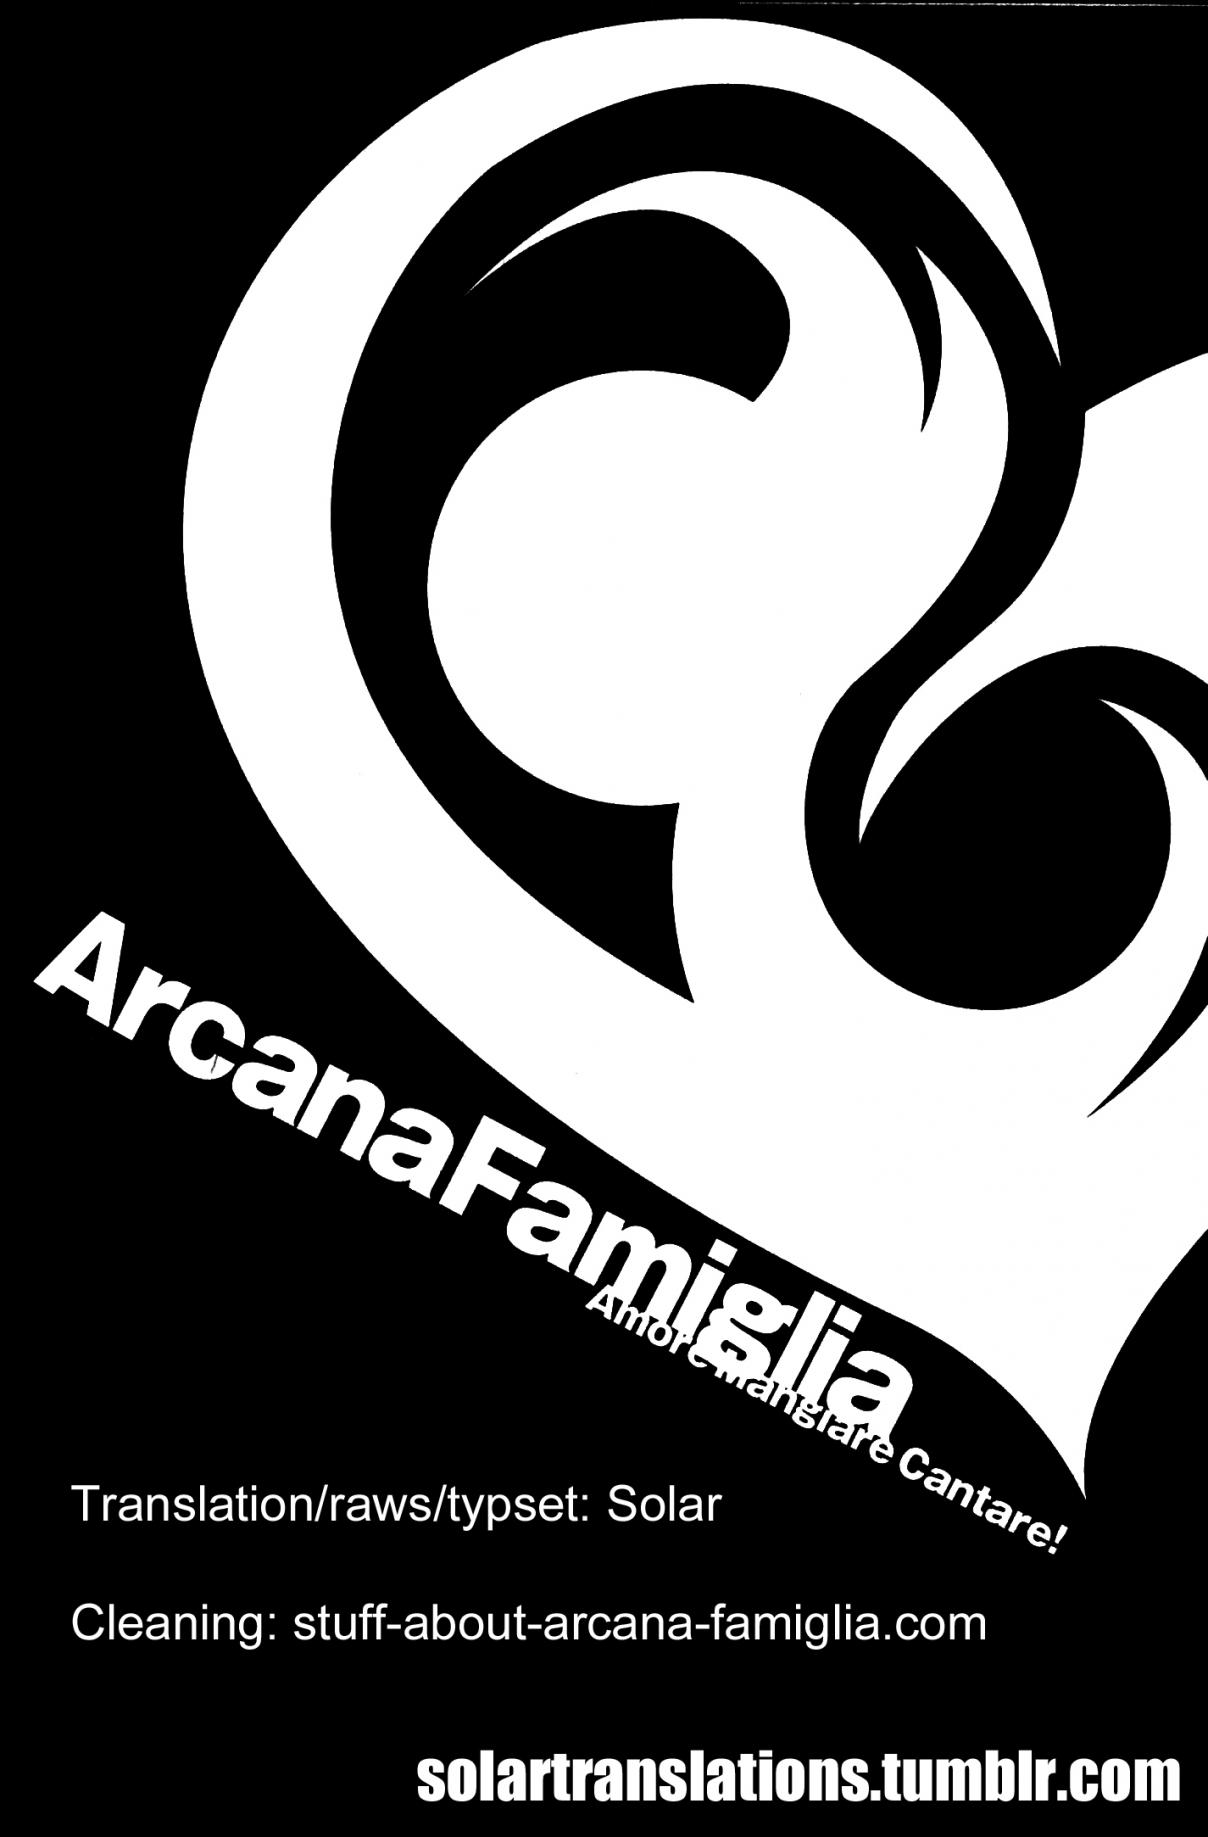 Arcana Famiglia Amore Mangiare Cantare! Vol. 4 Ch. 26 Epilogue